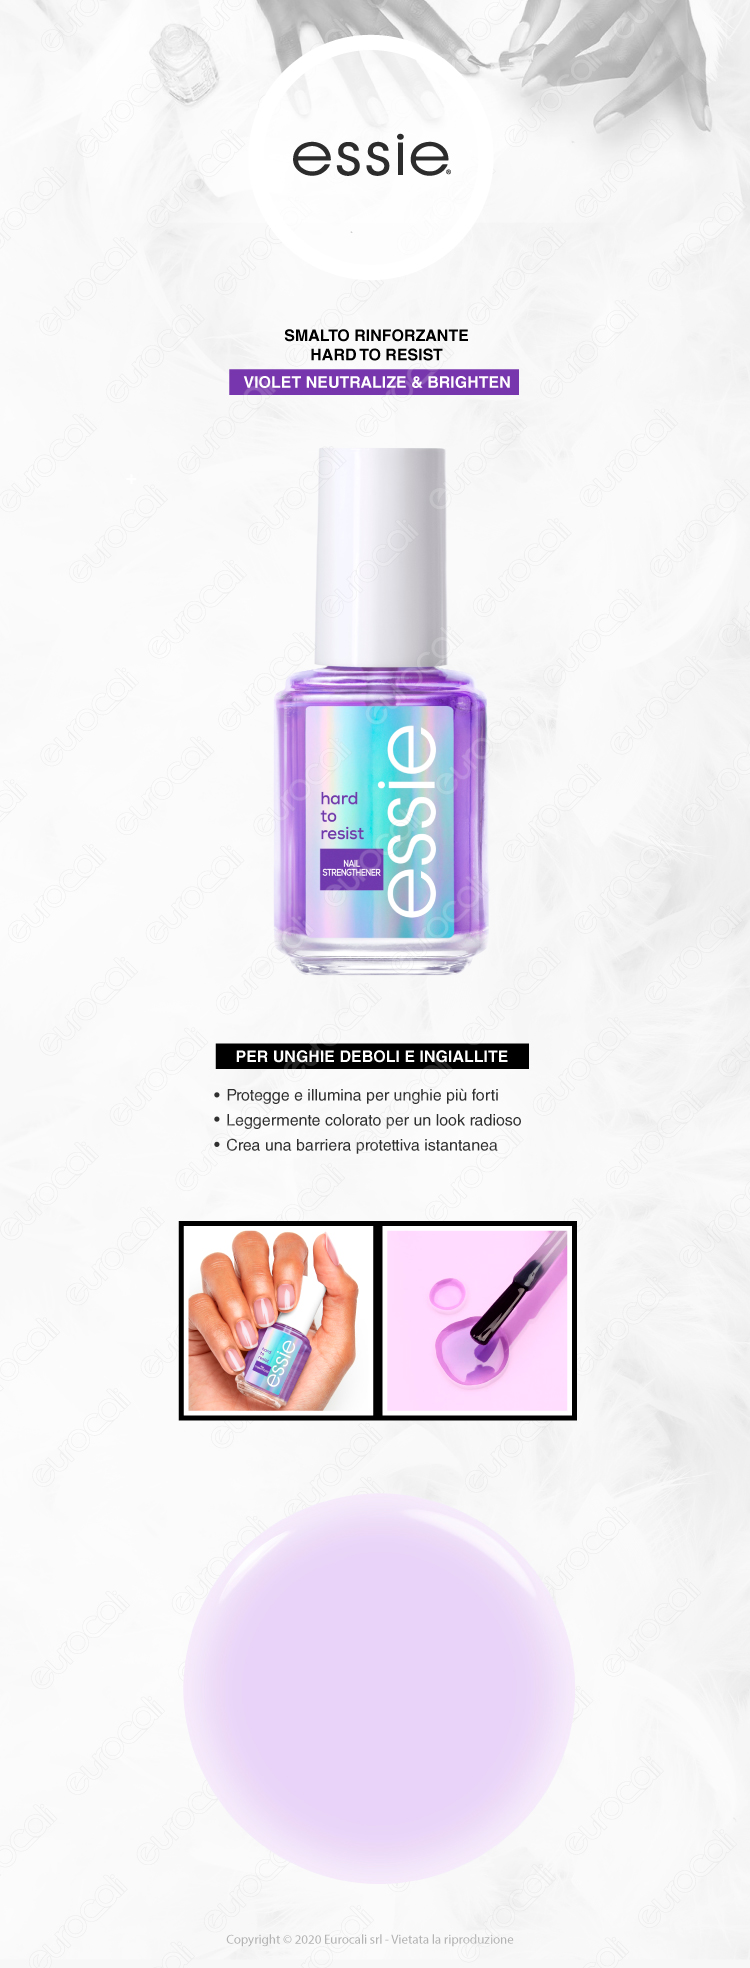 Essie Neutralize & Brighten Violet smalto rinforzante anti giallo per unghie deboli